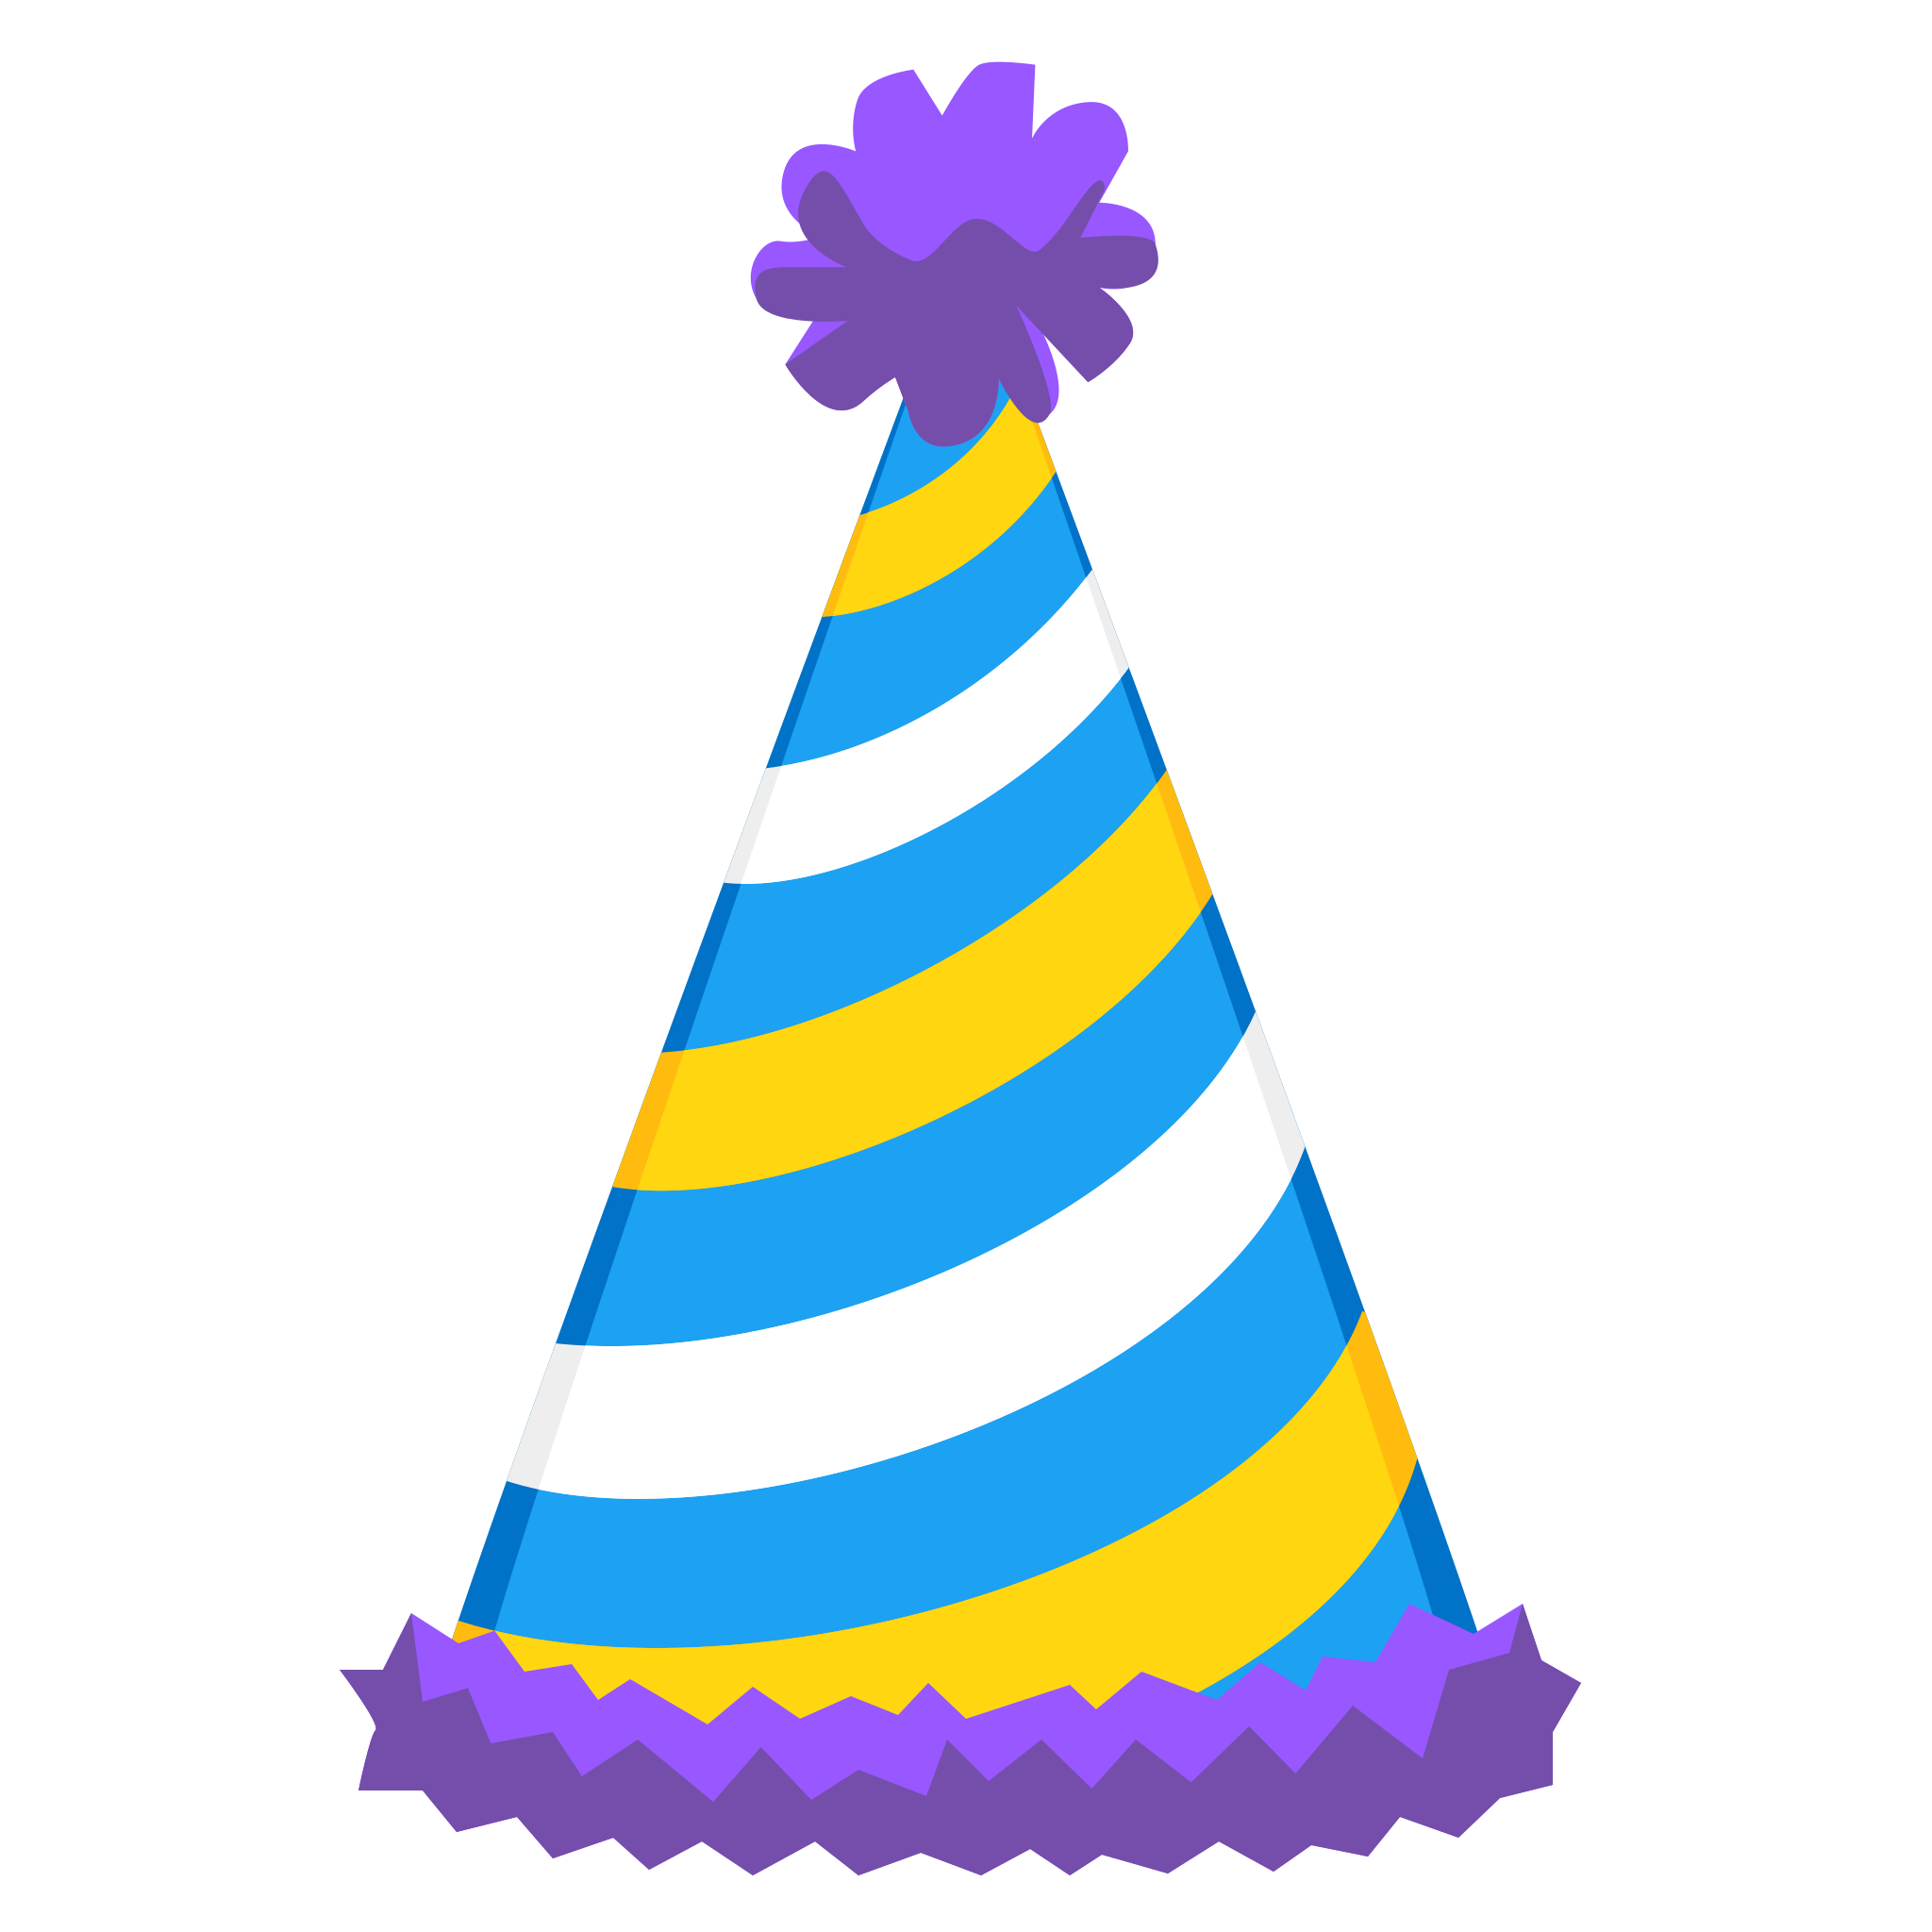 Warna-warni topi ulang tahun PNG Gambar unduh Gratis